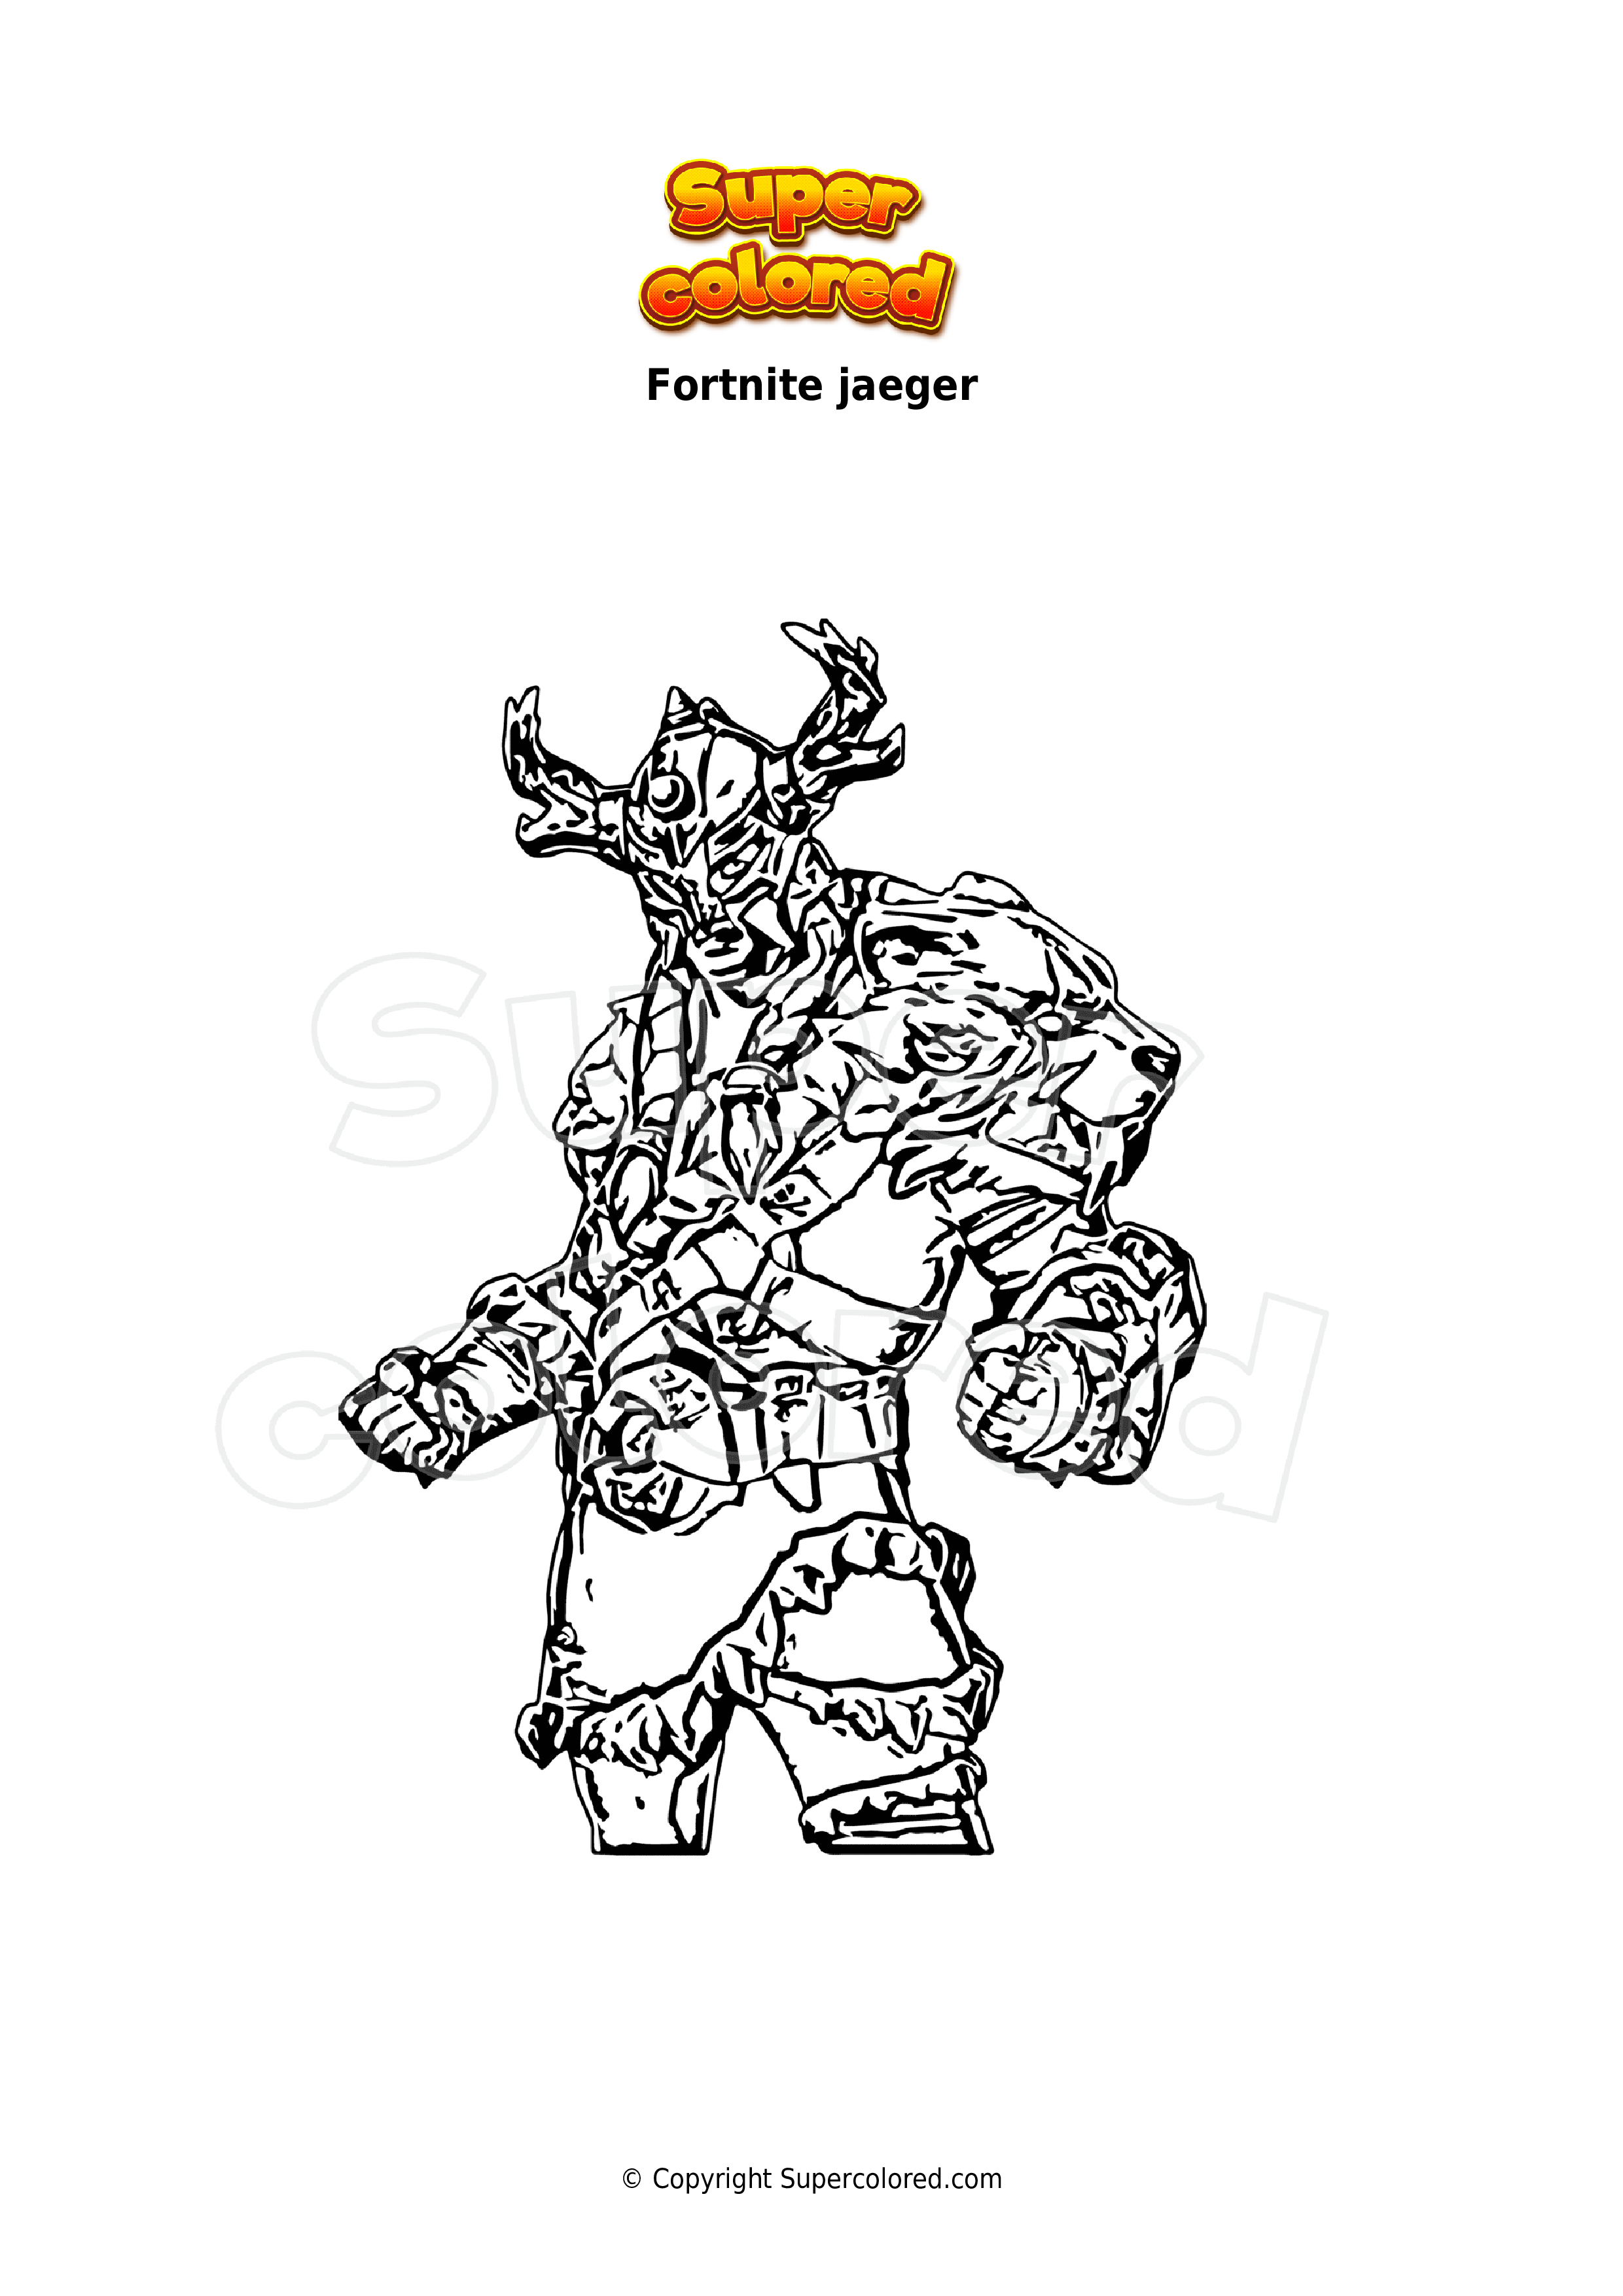 Dibujo para colorear Fortnite jaeger - Supercolored.com